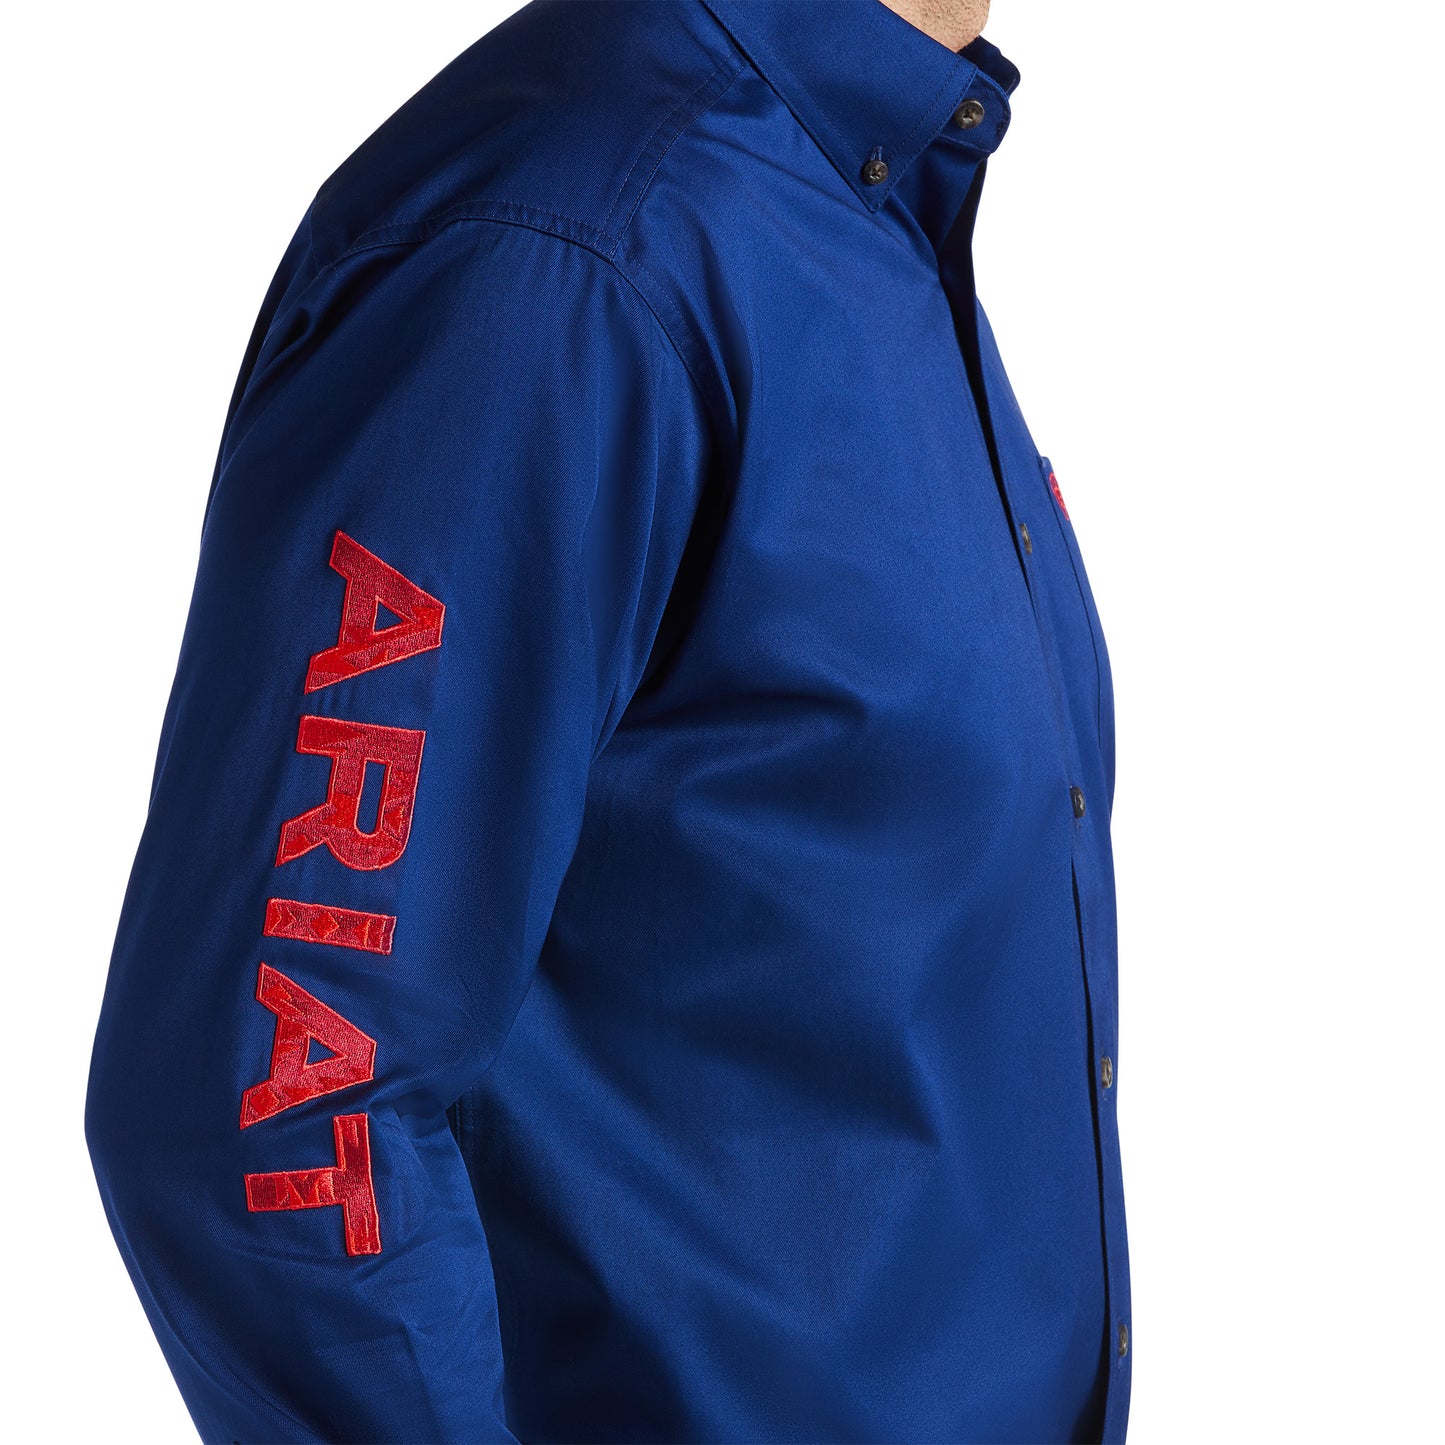 Ariat® Men's Team Logo Twill Long Sleeve Blue Depths Shirt 10038014